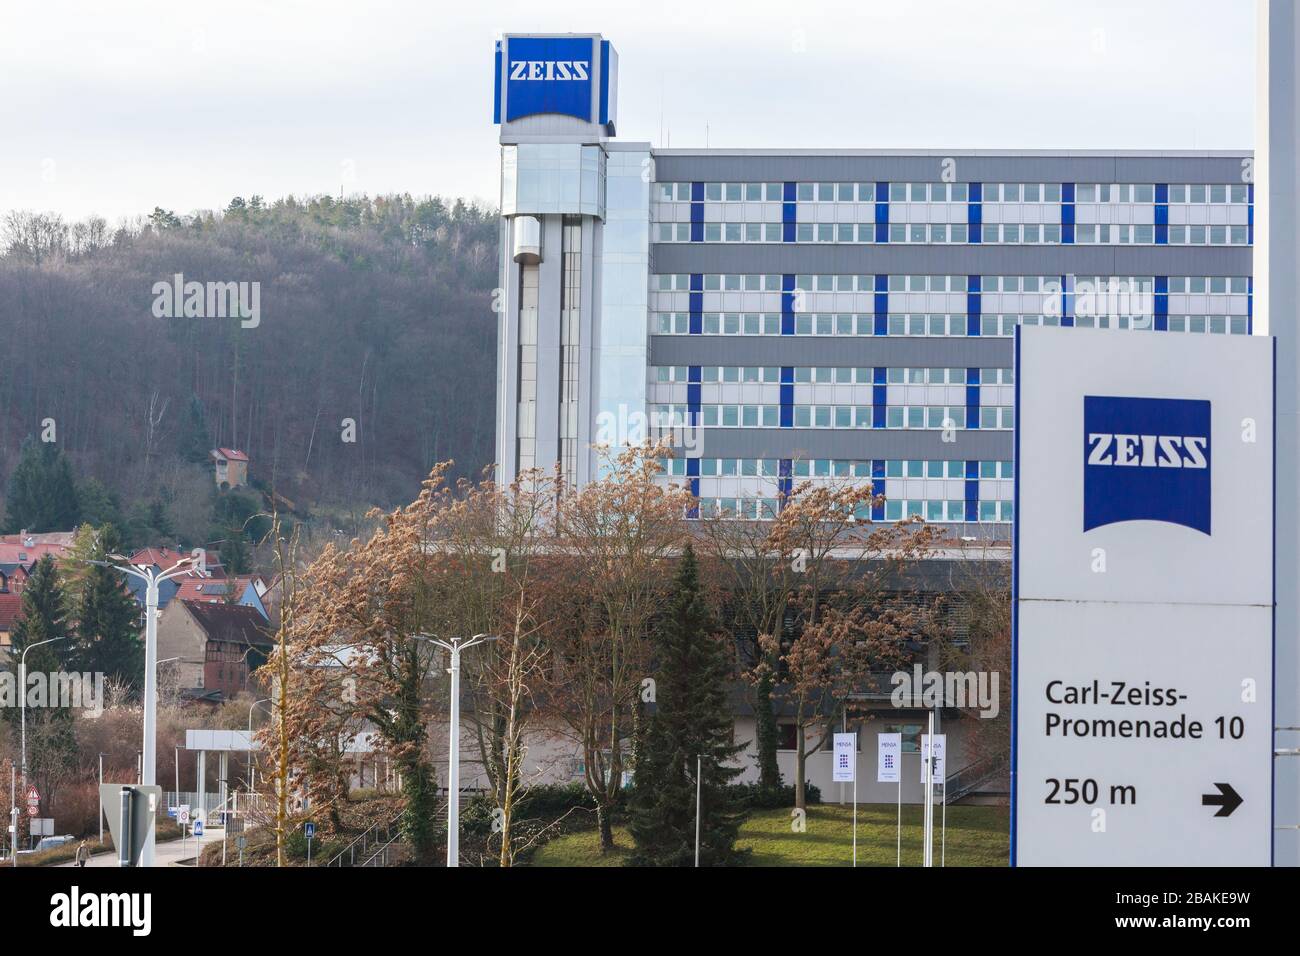 Jena - 12. Januar 2020: Zeiss Zentrale in Jena Carl Zeiss ist ein deutsches Unternehmen, das sich auf optische Instrumente, Optik und Objektive spezialisiert hat Stockfoto